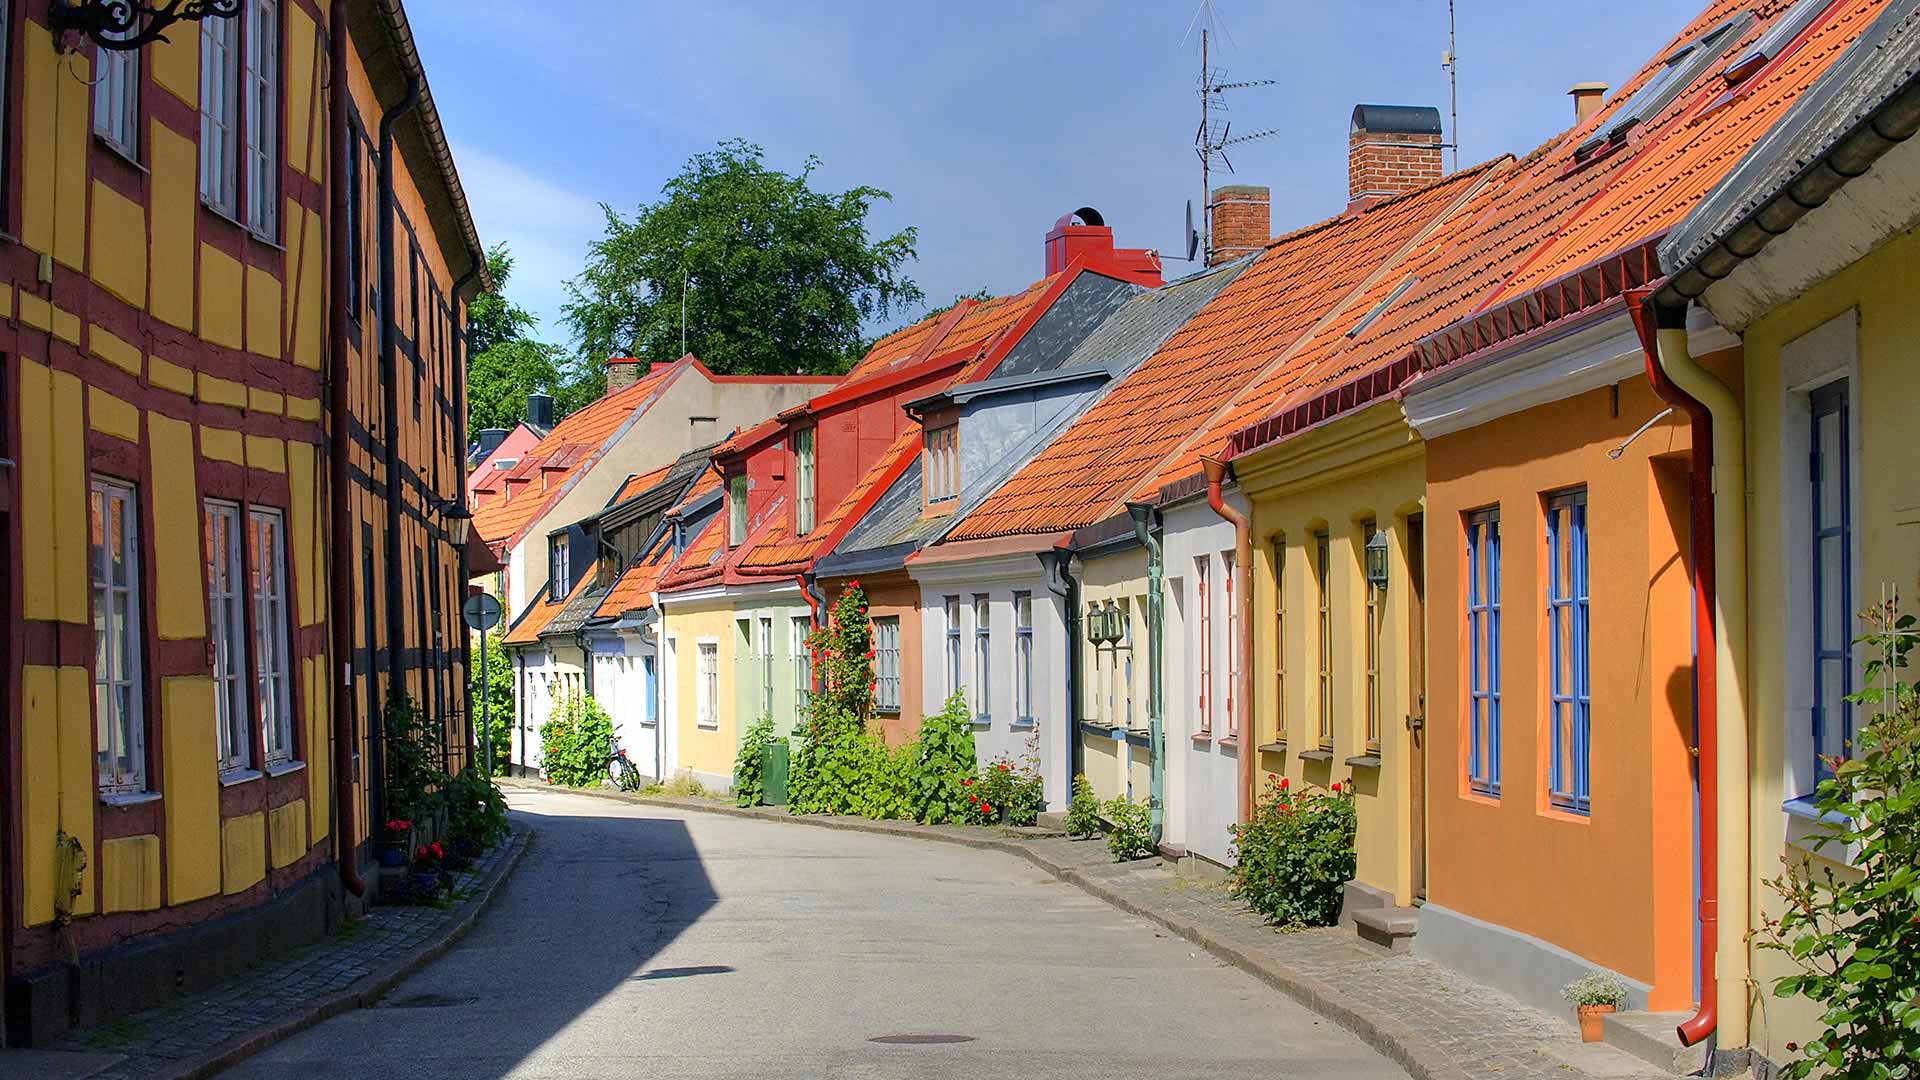 Ystad, southeast Sweden